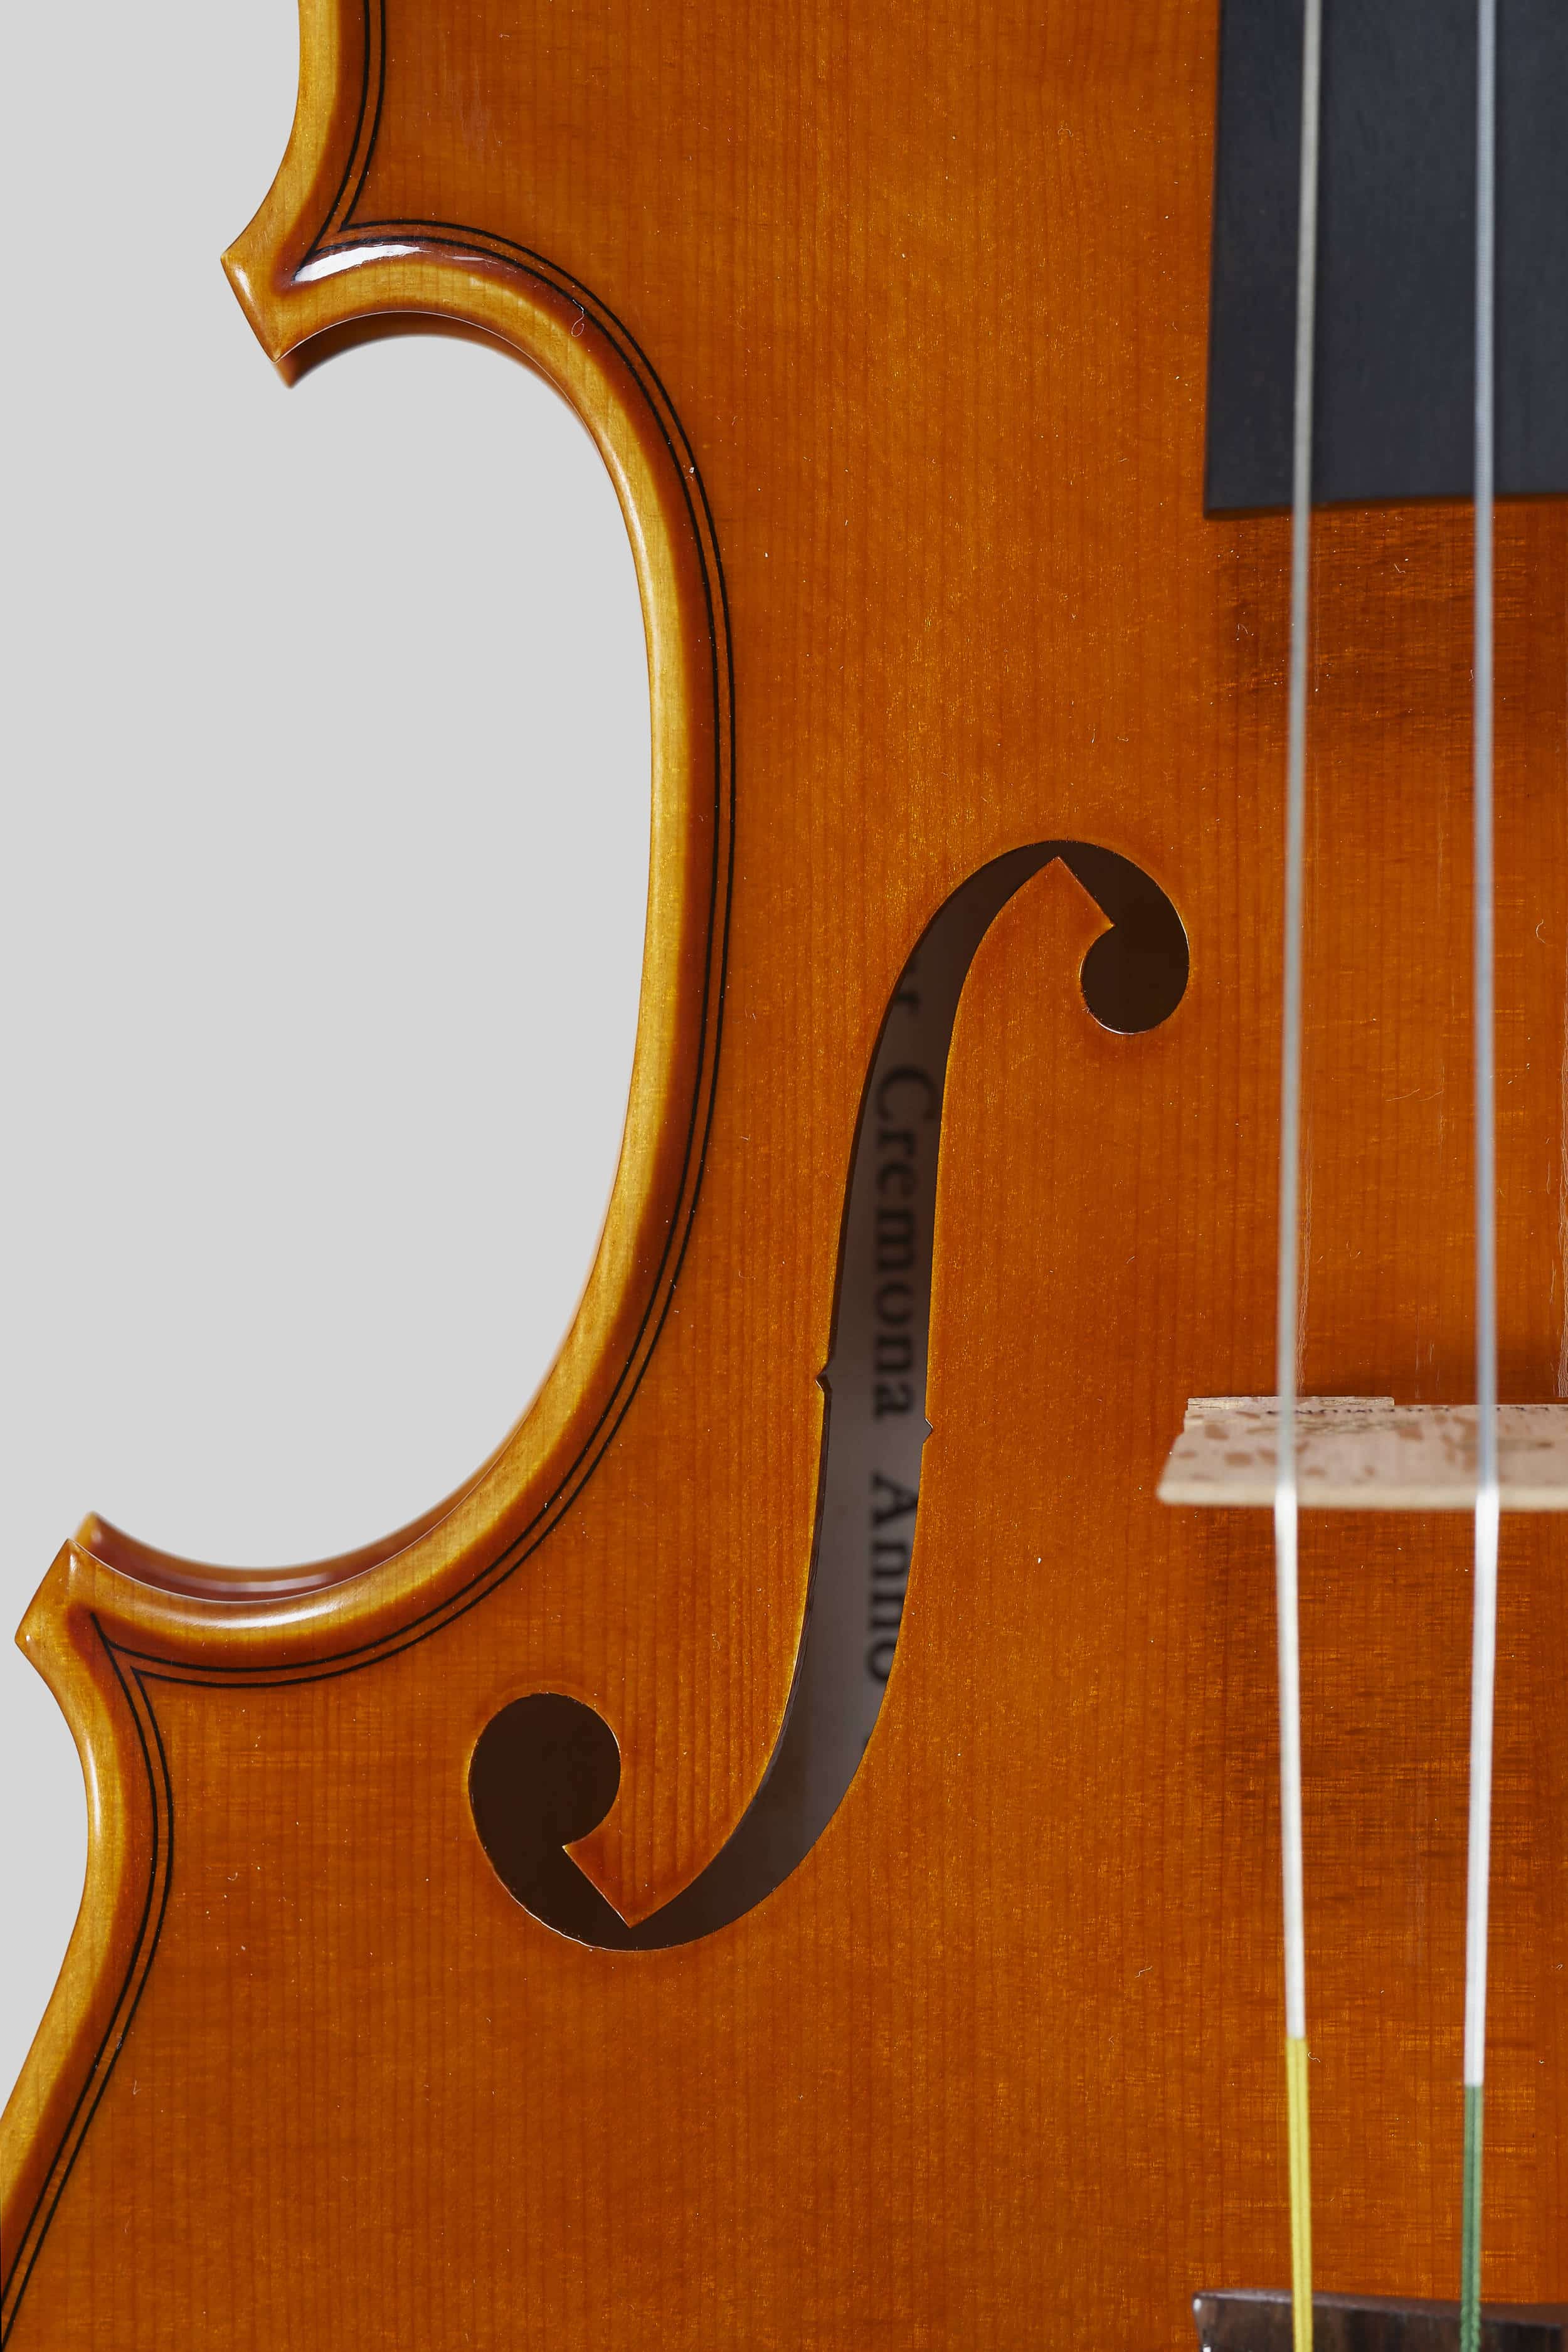 Anno 2016 - Violino modello A. Stradivari Rode, Le nestor 1733 - Effe